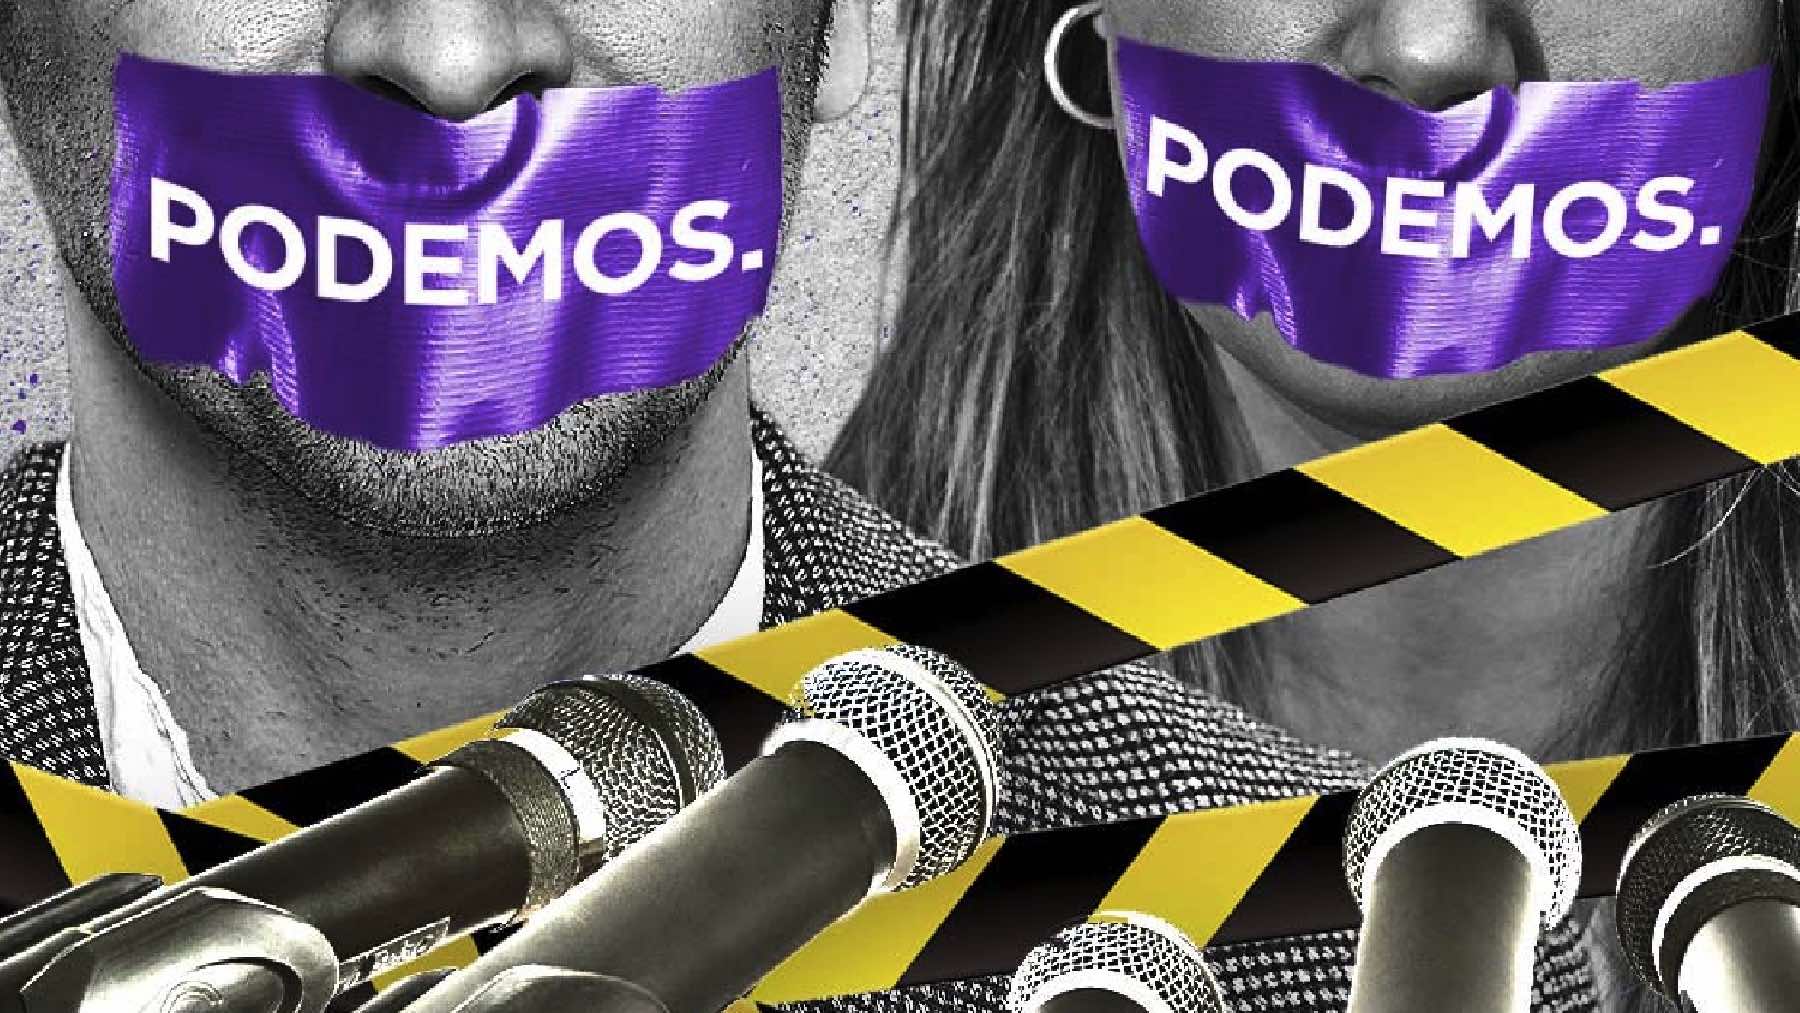 Cargos de Podemos.